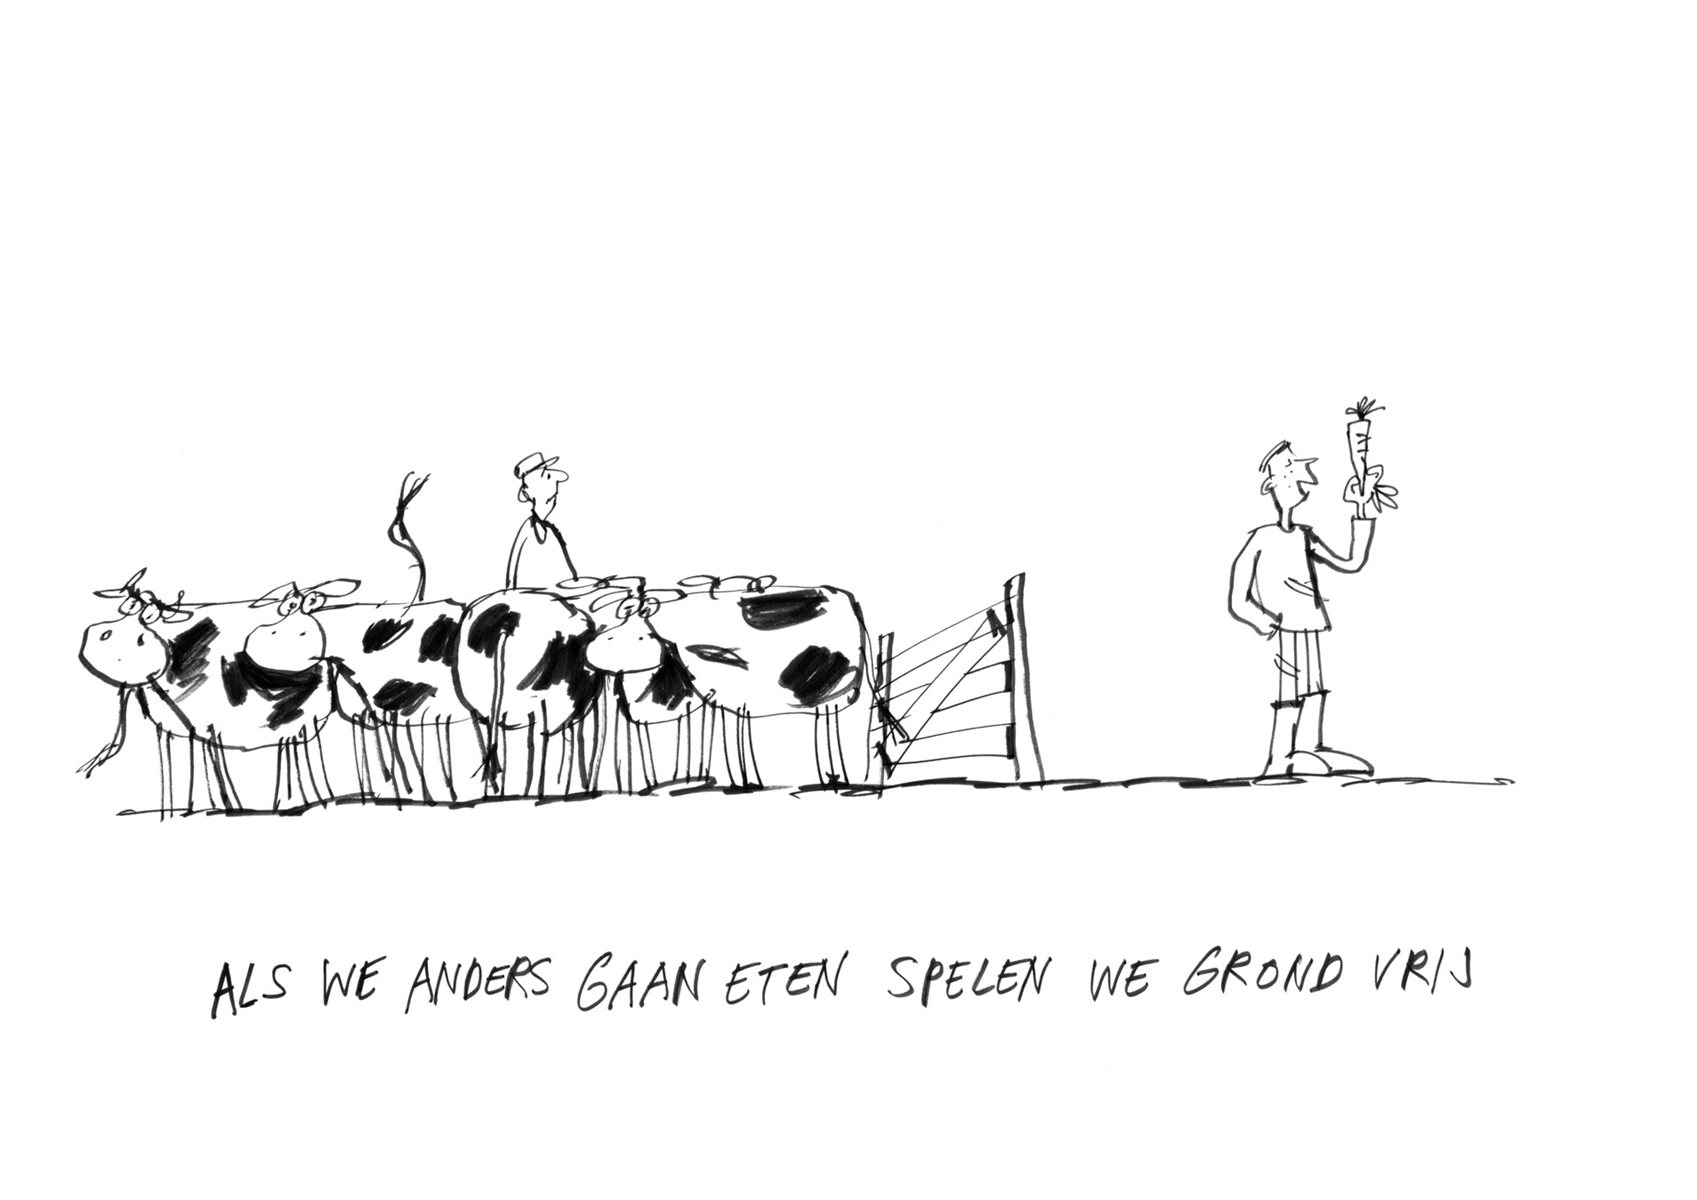 Titel: als we anders gaan eten spelen we grond vrij. Afgebeeld: een groep koeien en een boer die verbaasd kijken naar een man die een wortel vasthoudt.